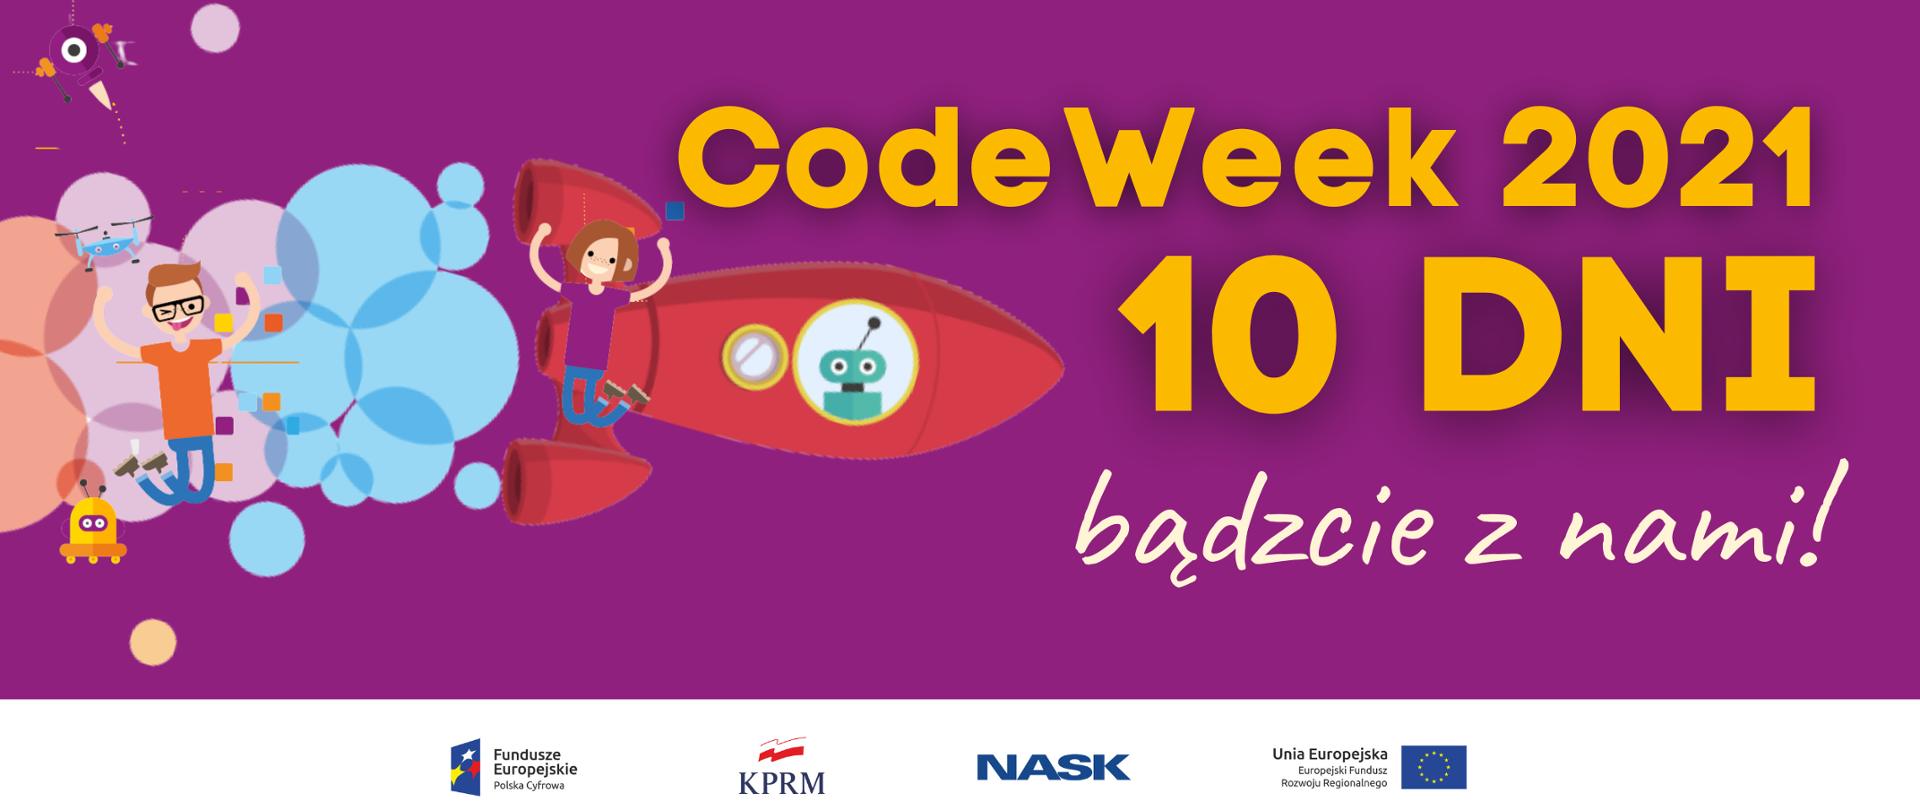 Kolorowa grafika wektorowa - fioletowe tło, z lewej strony cieszące się dzieci na tle chmur i rakiet. Z prawej strony - żółty tekst "CodeWeek2021 10 dni bądźcie z nami!"